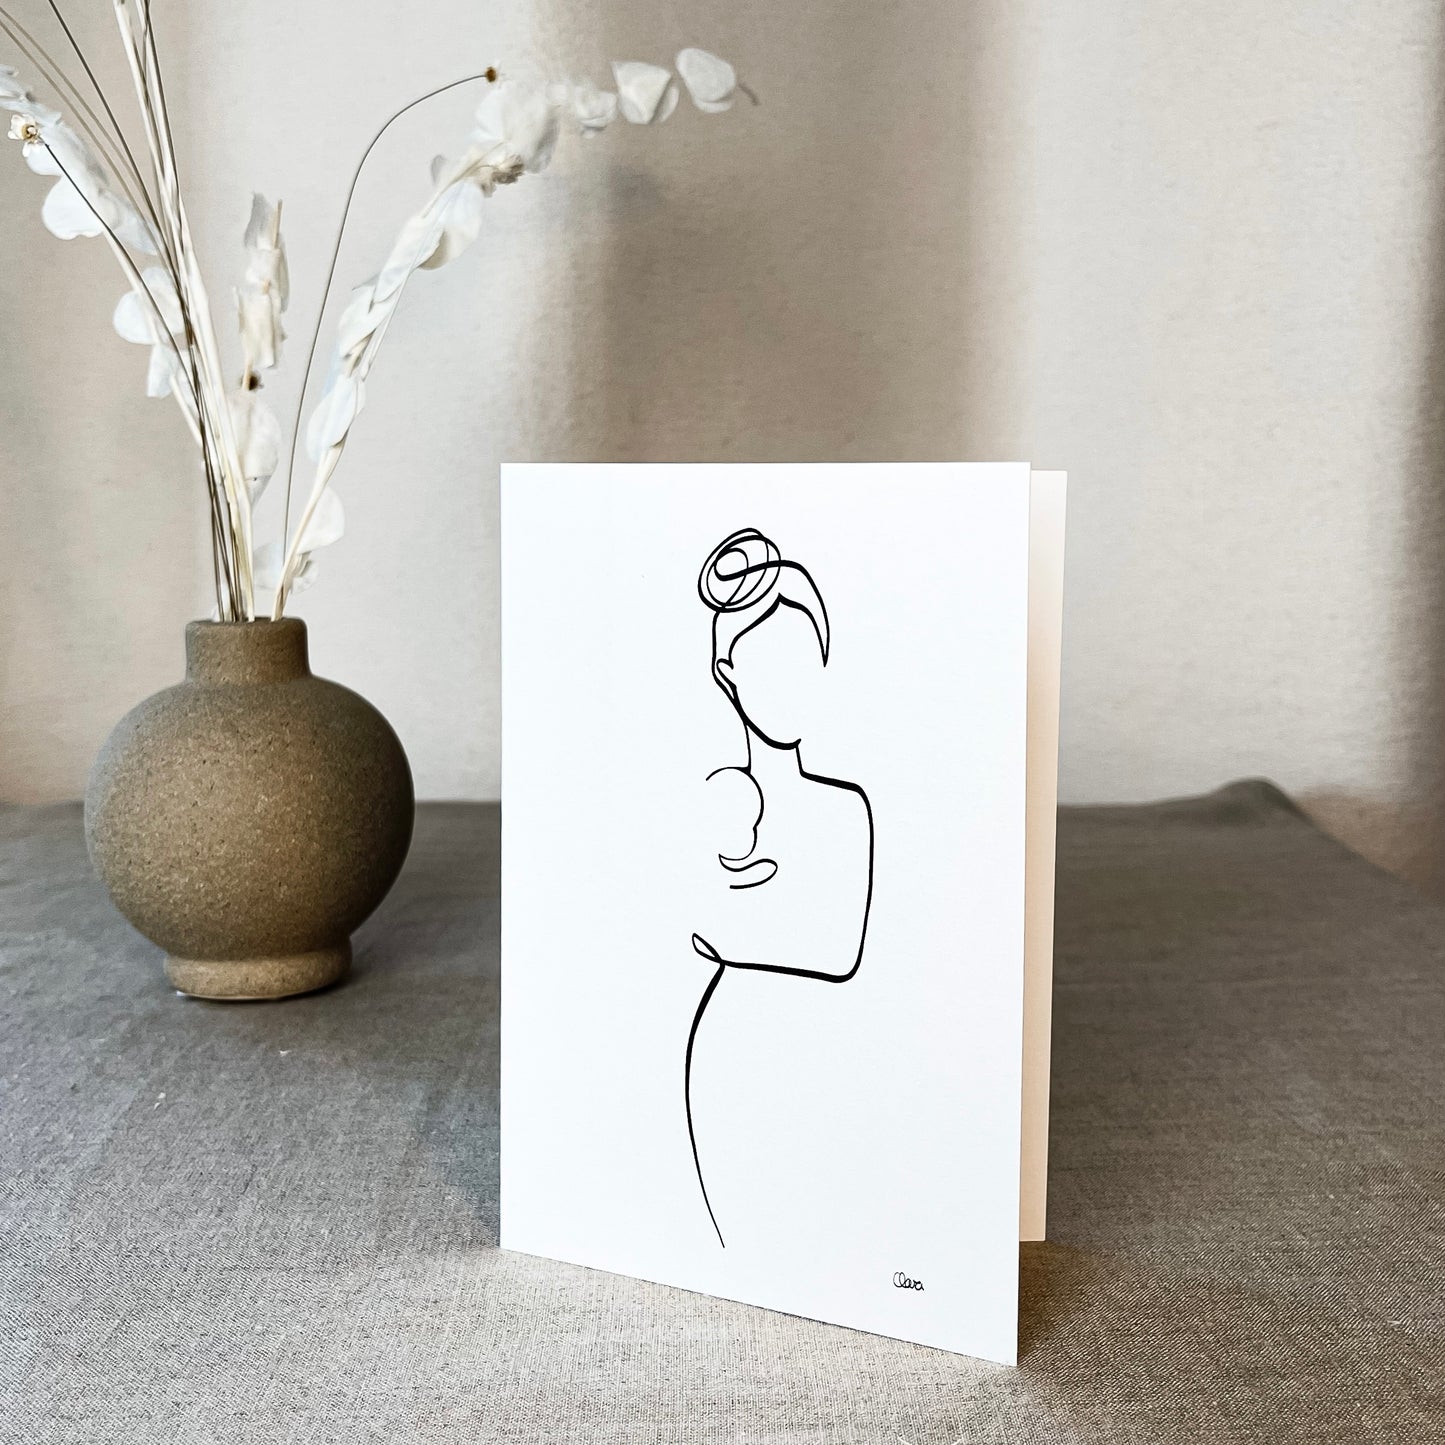 Mutter und Kind Nr. 5-Leinwand-JUDITH CLARA-12x17 cm Grußkarte (zartweiß) Papier 300g-one-line-art